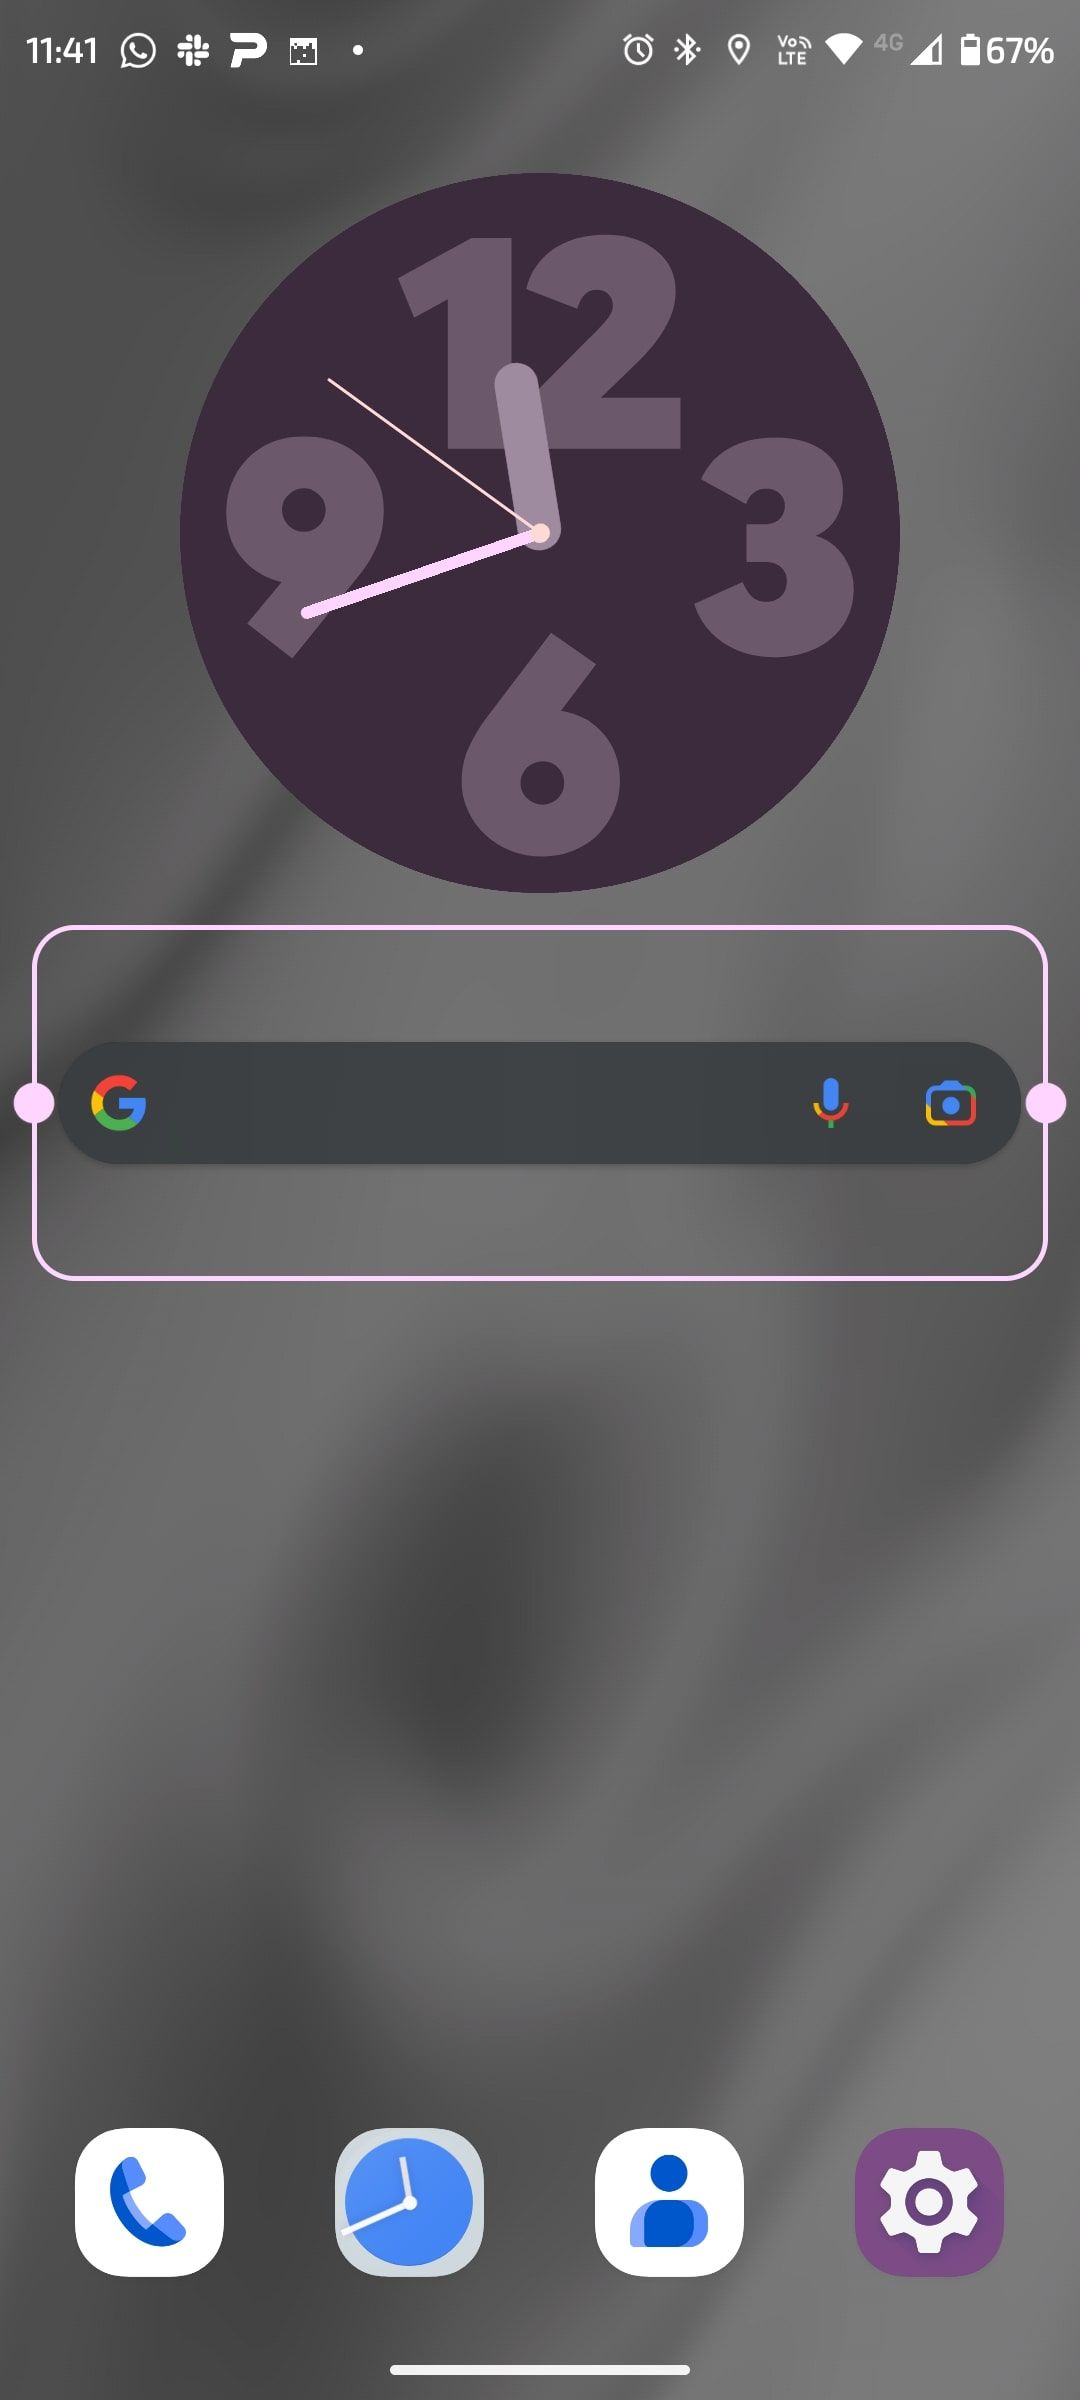 Pantalla de inicio de Android con el widget de Google en un círculo